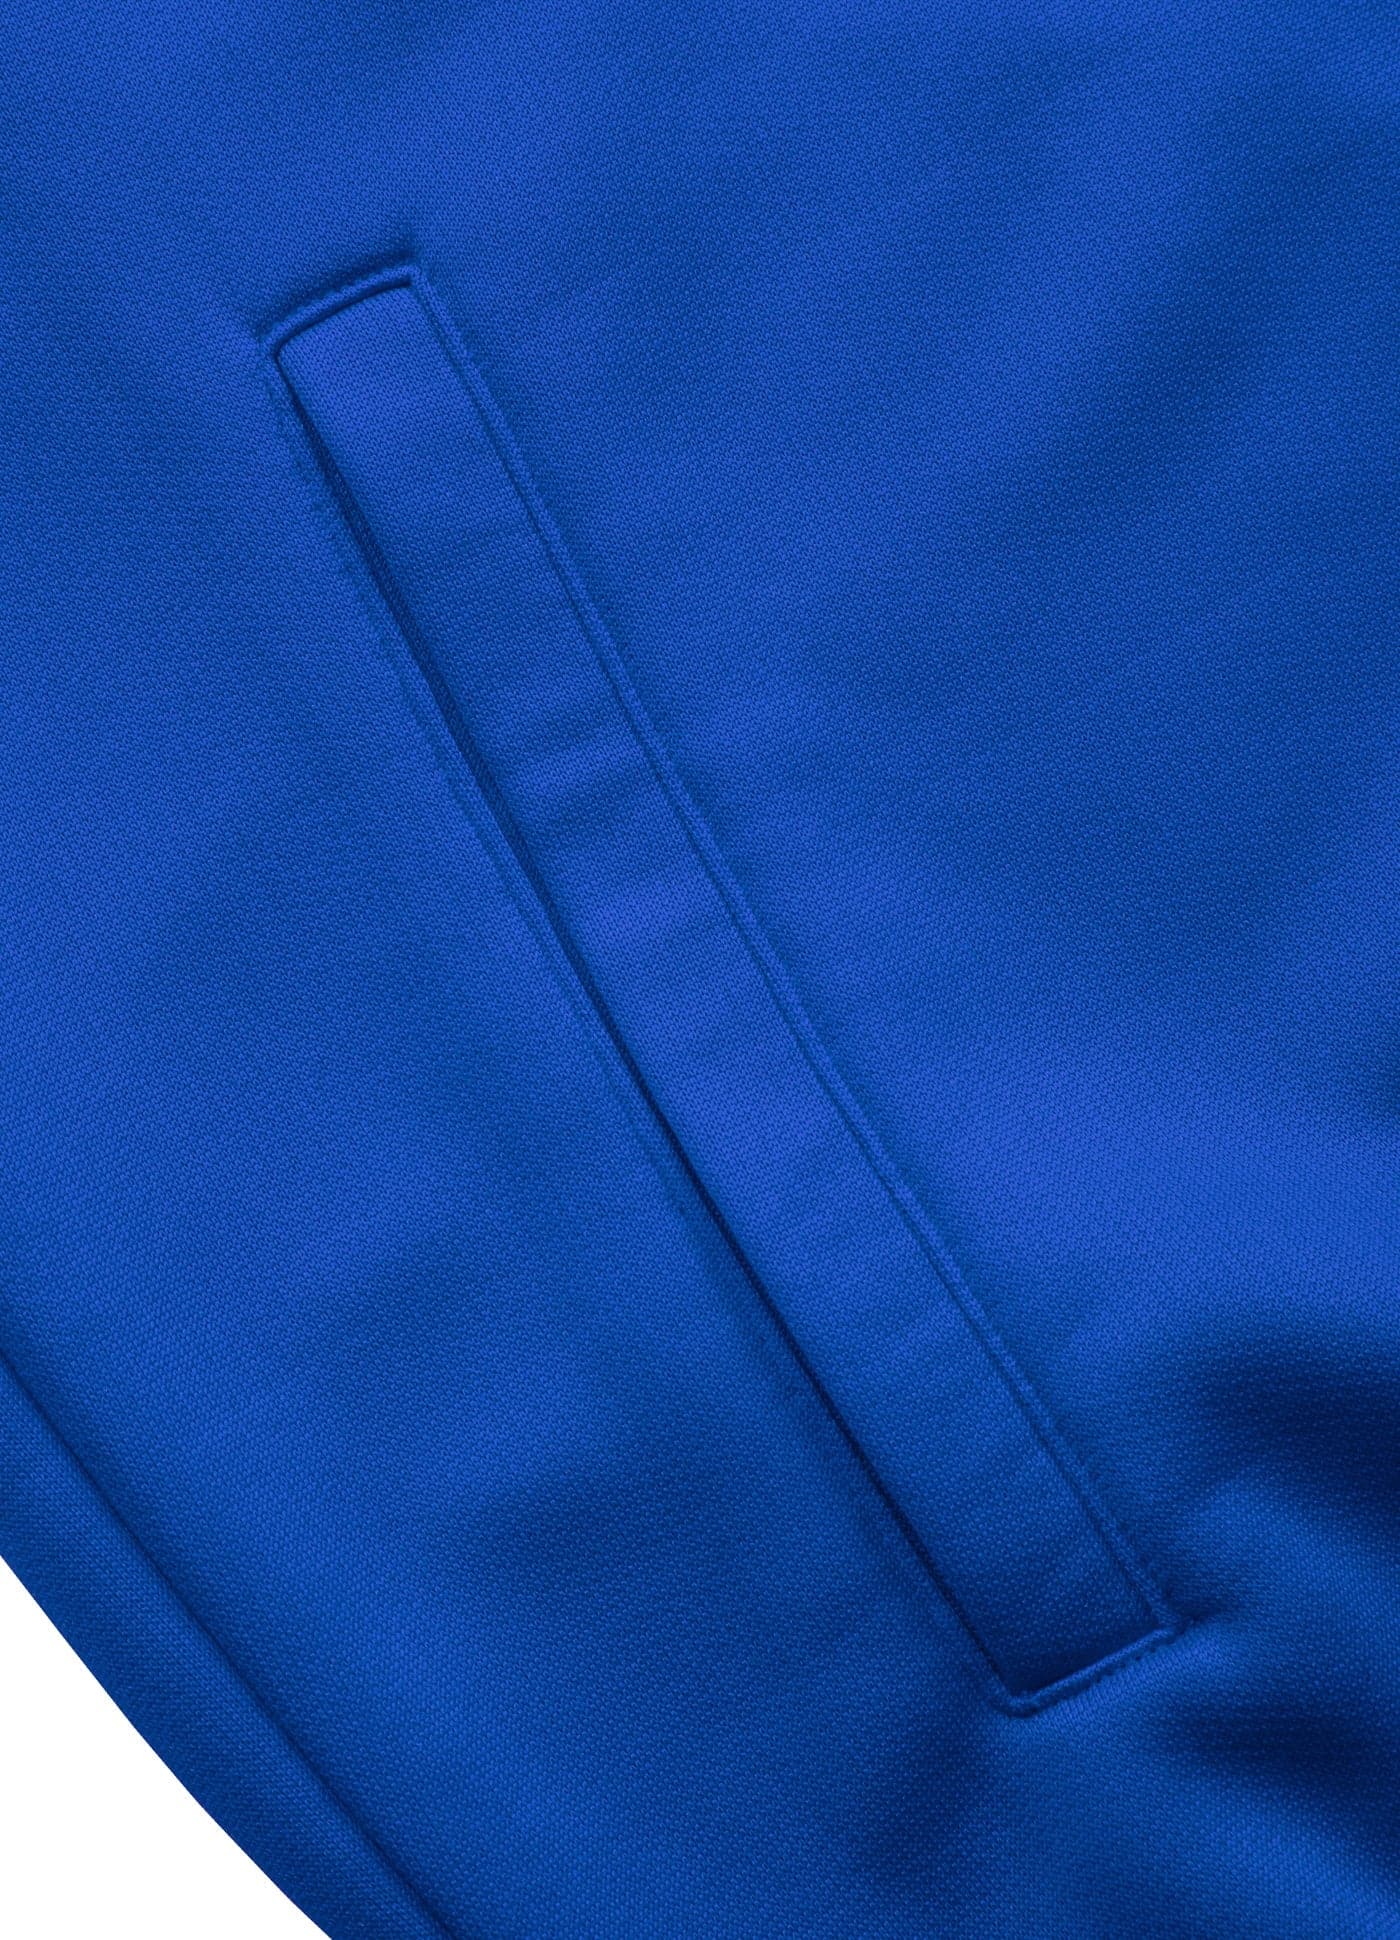 Buy TAPE LOGO Blue Zip Sweatshirt | Pitbull Store